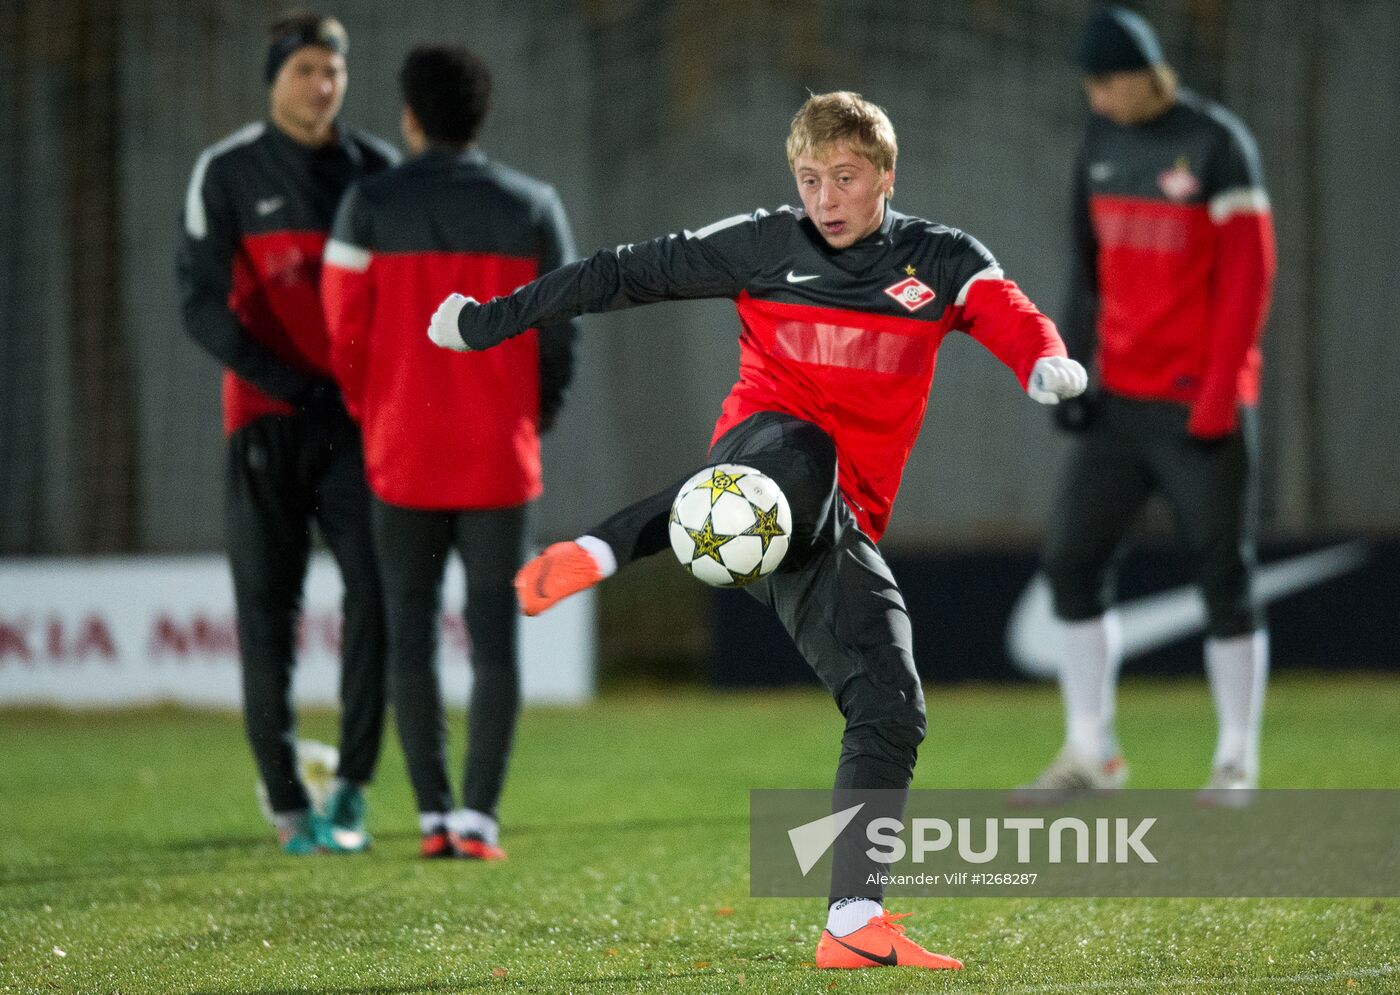 Football. Spartak team holds training session